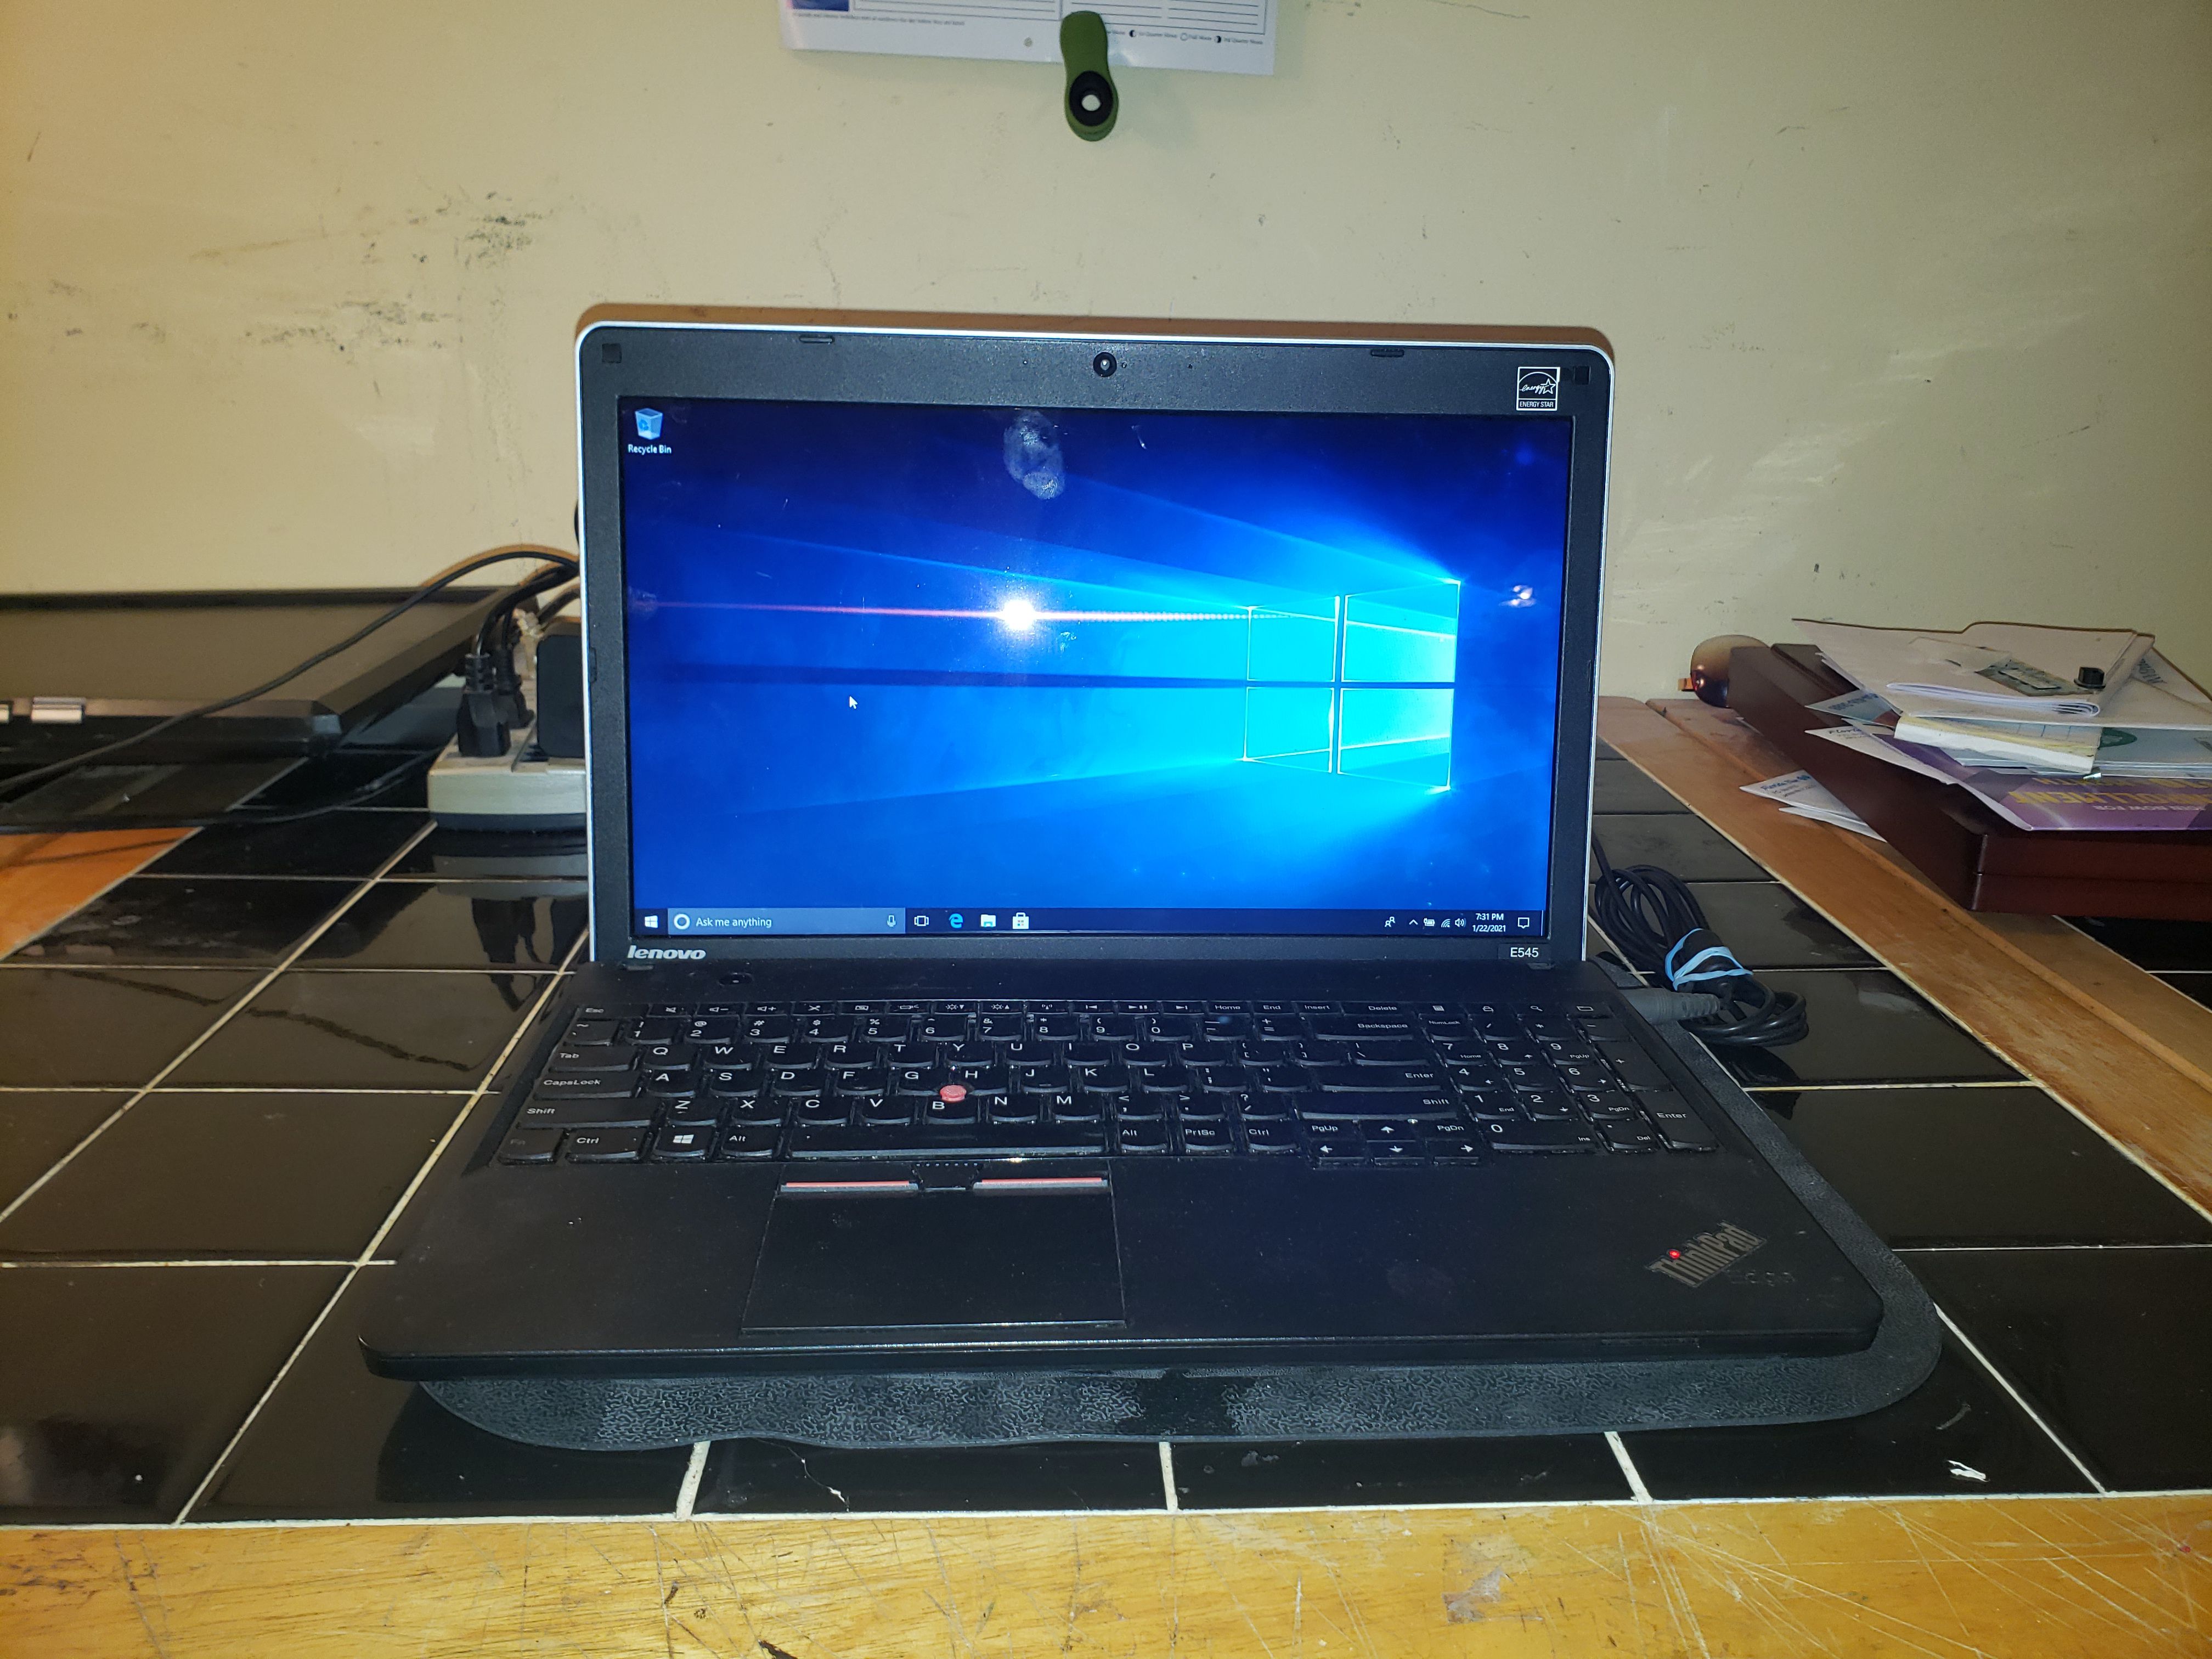 Lenovo ThinkPad E545 AMD A6-5350m @ 2.9GHz 4GB 120gb WEBCAM HDMI etc...